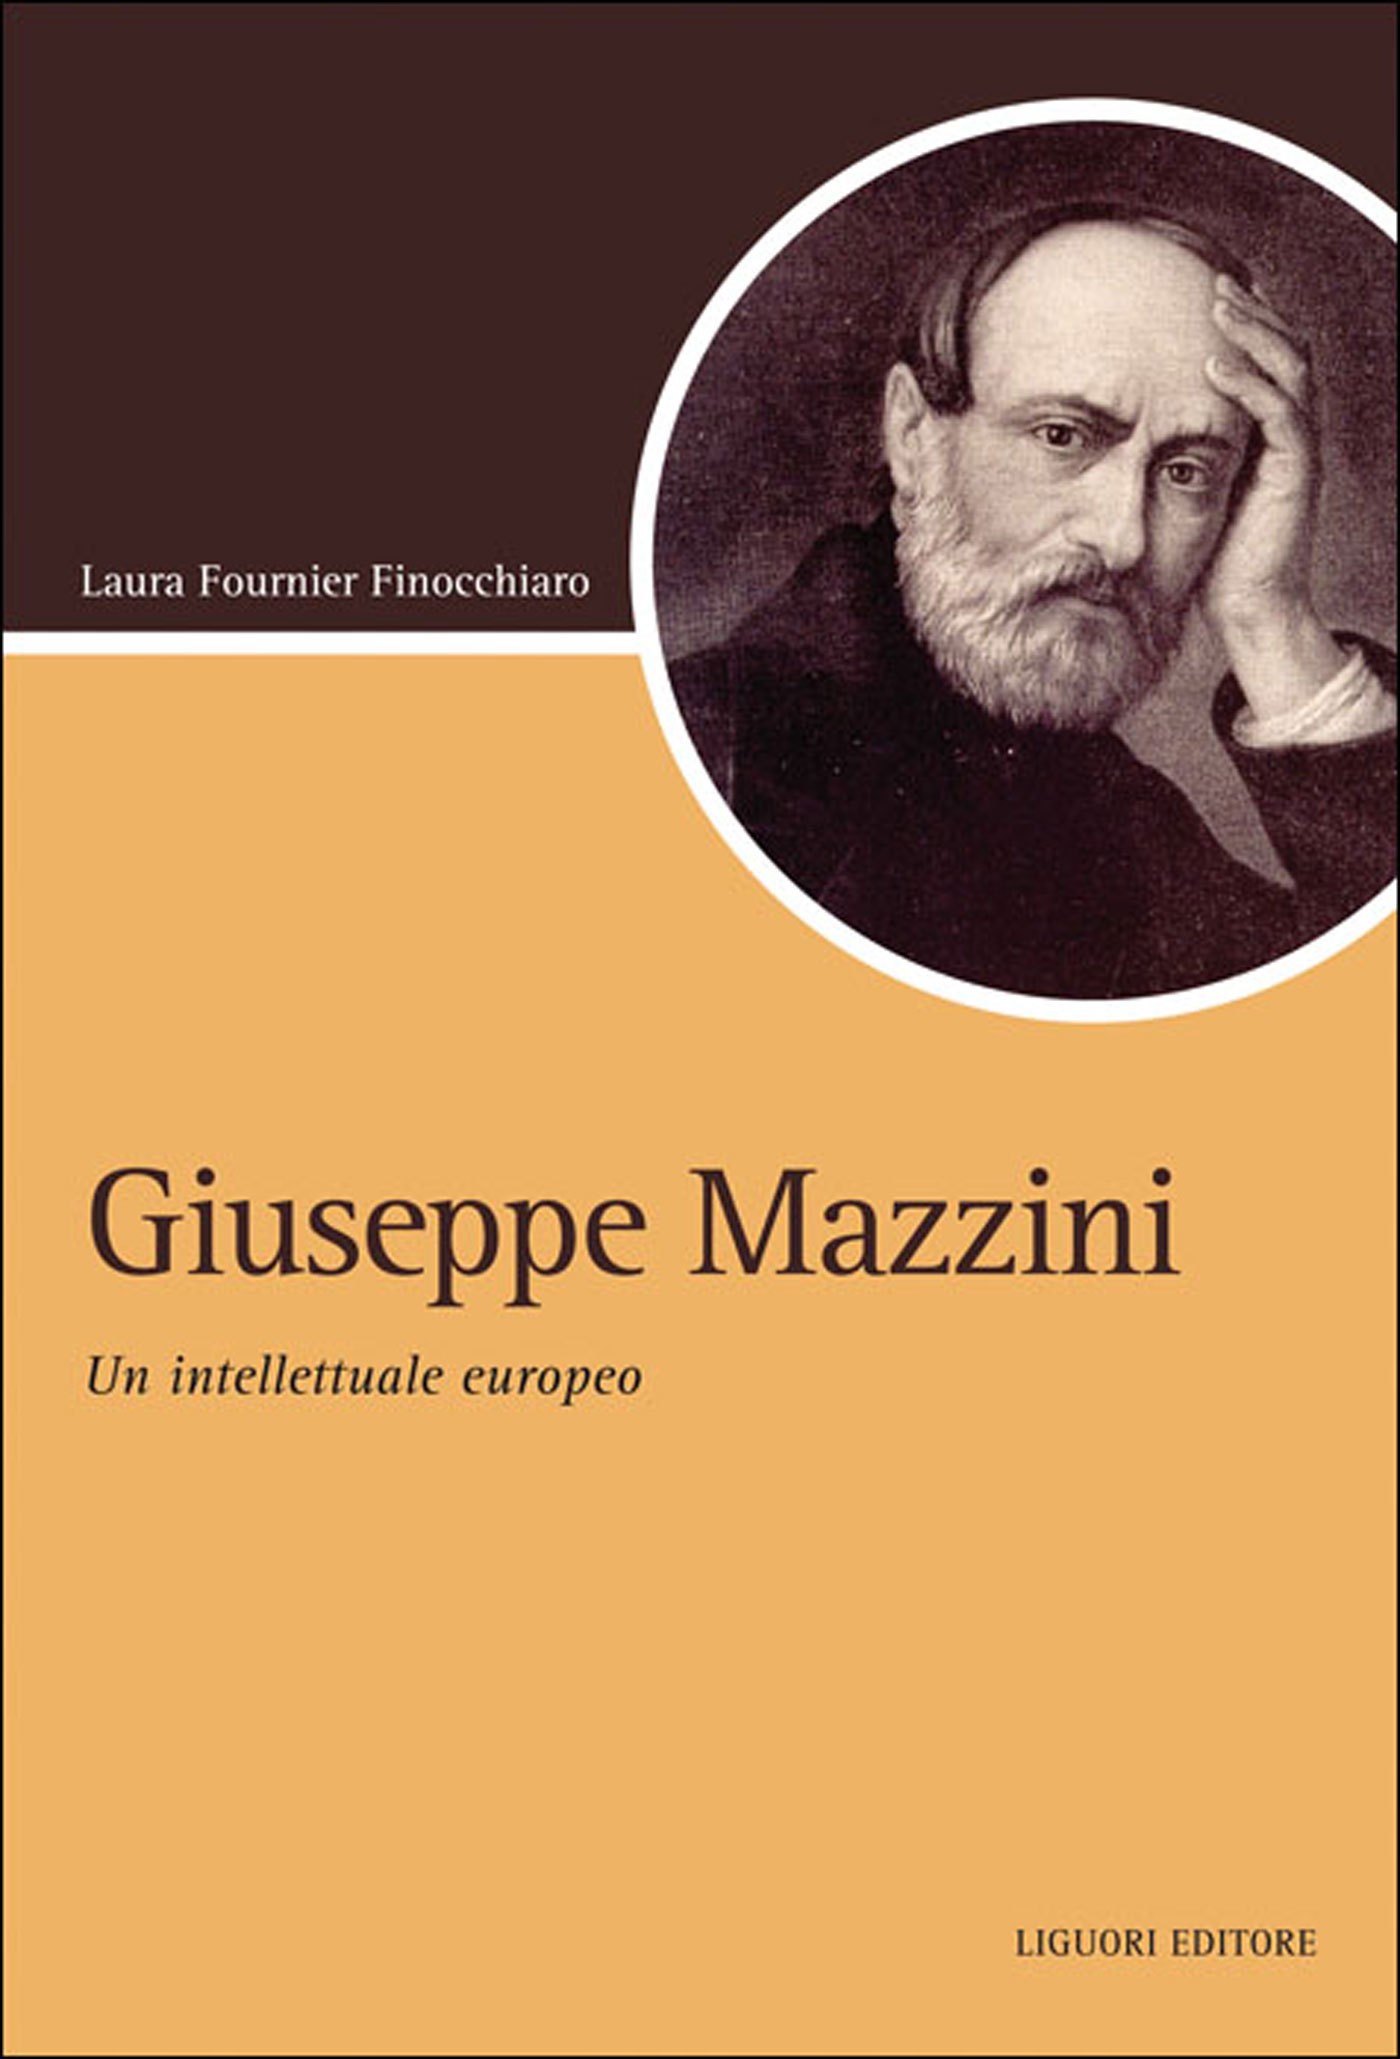 Giuseppe Mazzini - Librerie.coop